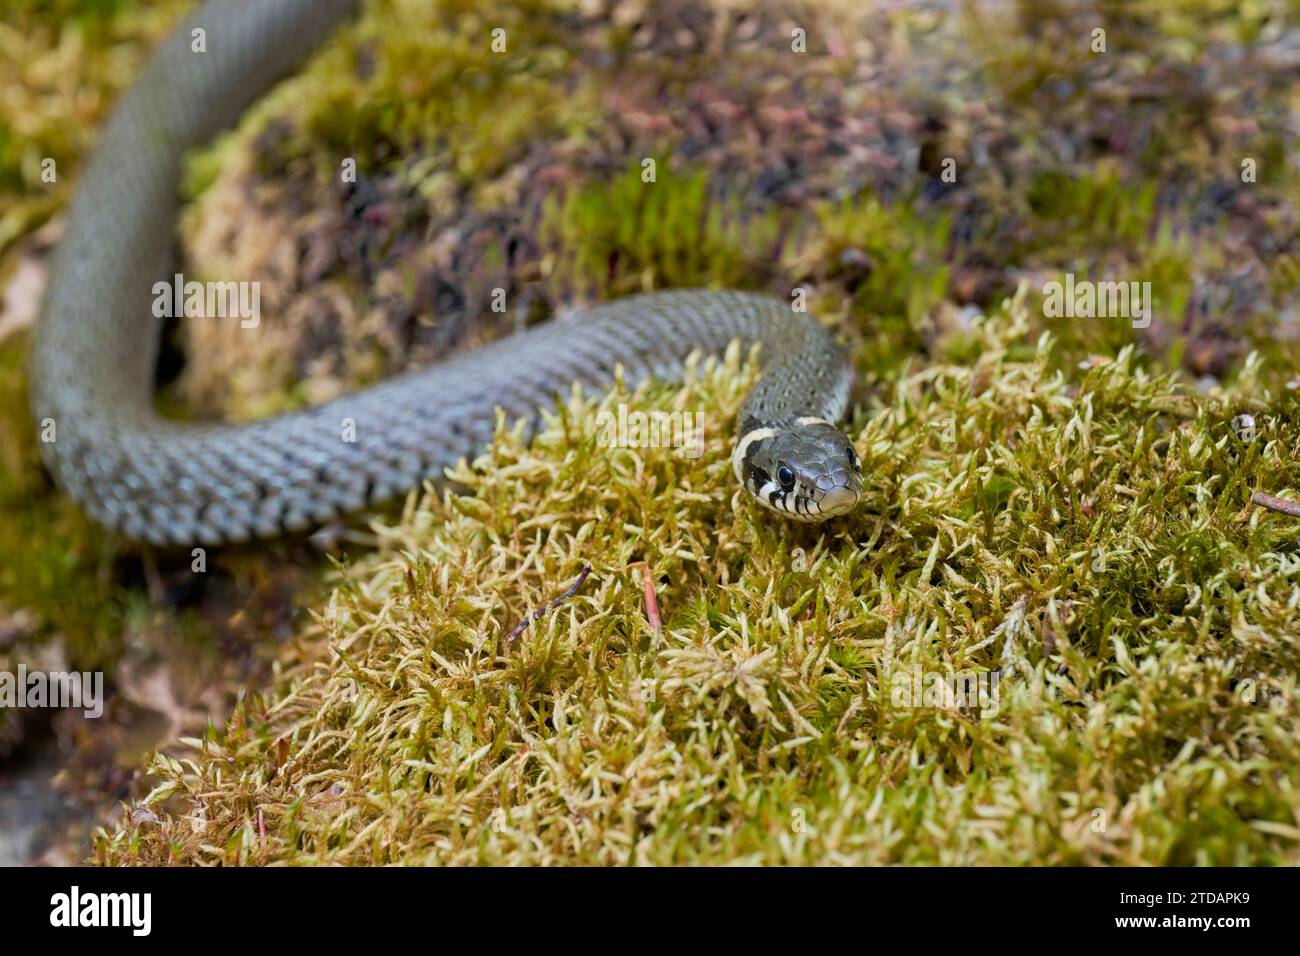 Ringelnatter, Natrix natrix,Grass Snake Stock Photo